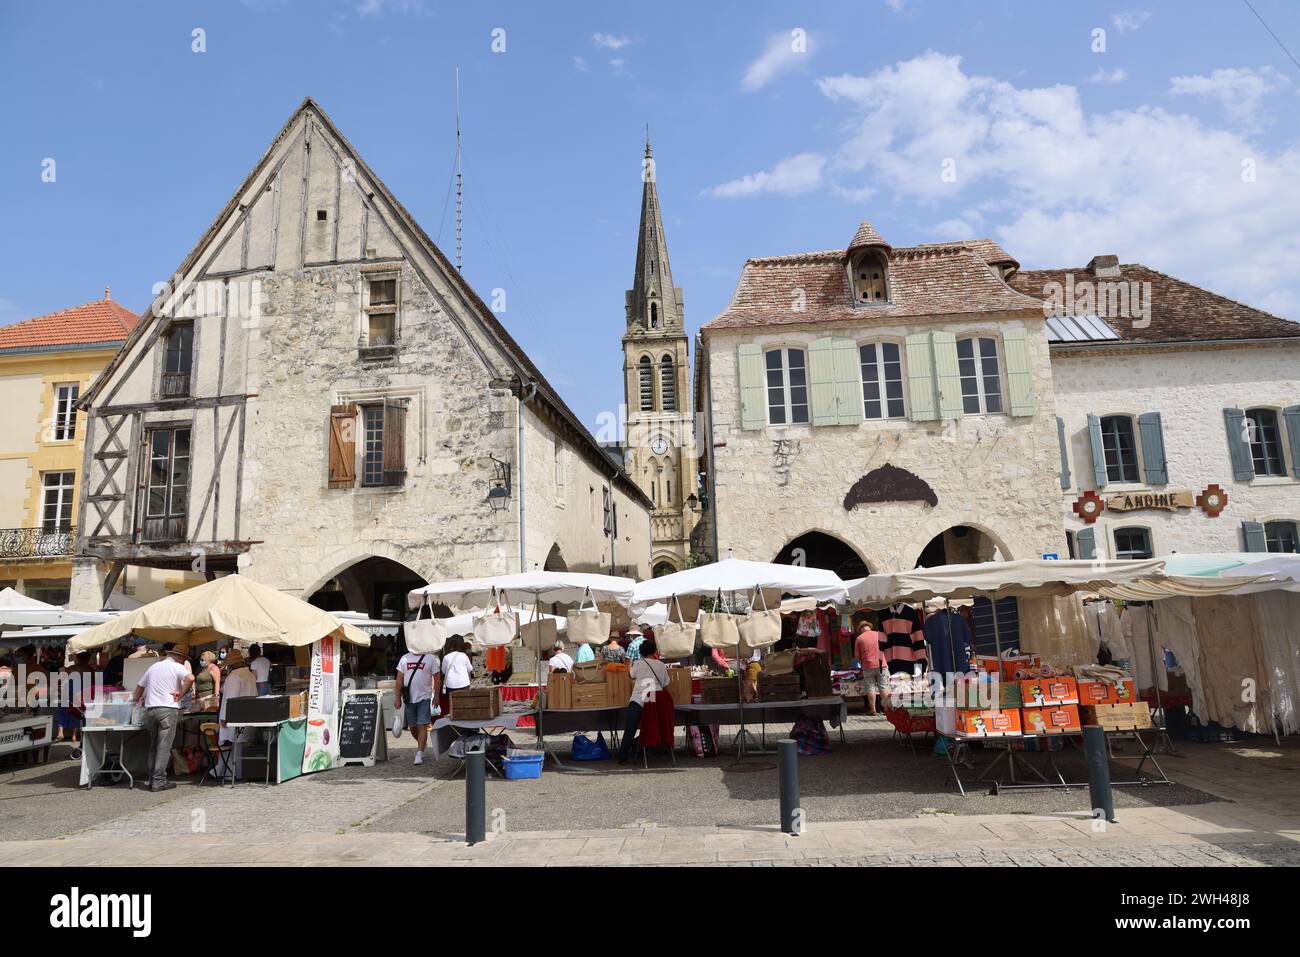 Eymet, le plus anglais des bastides françaises. Jour de marché sur la place centrale de la bastide médiévale (XIIIe siècle) d'Eymet en Périgord. La particule Banque D'Images